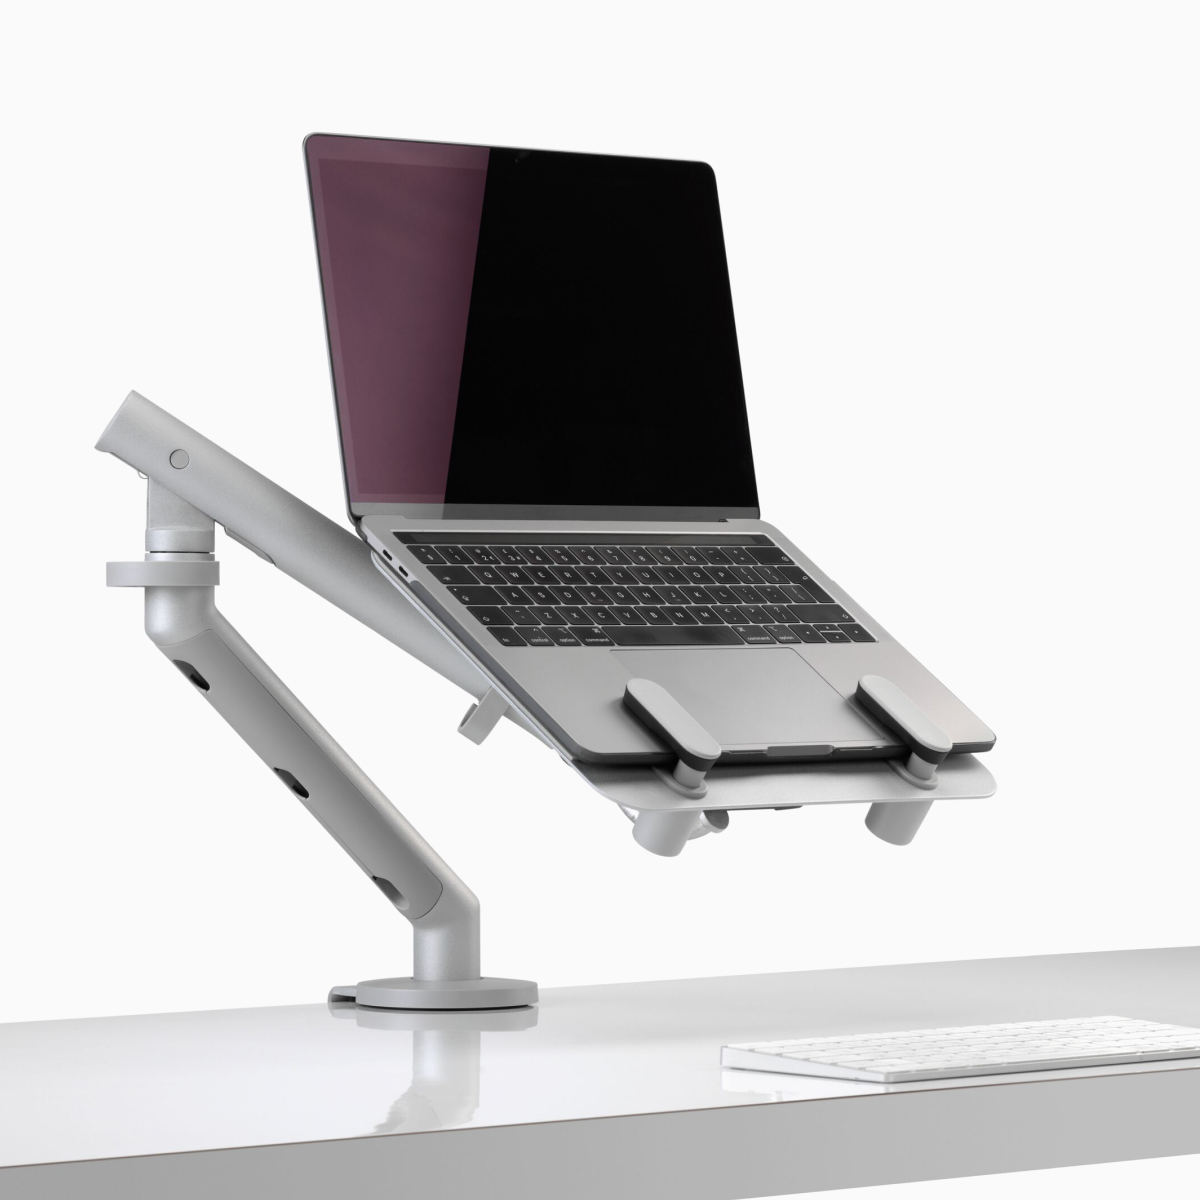 Una portátil abierta y elevada a la altura de la vista, sujetada mediante un soporte para computadora portátil Ollin y un brazo articulado para monitor Flo.